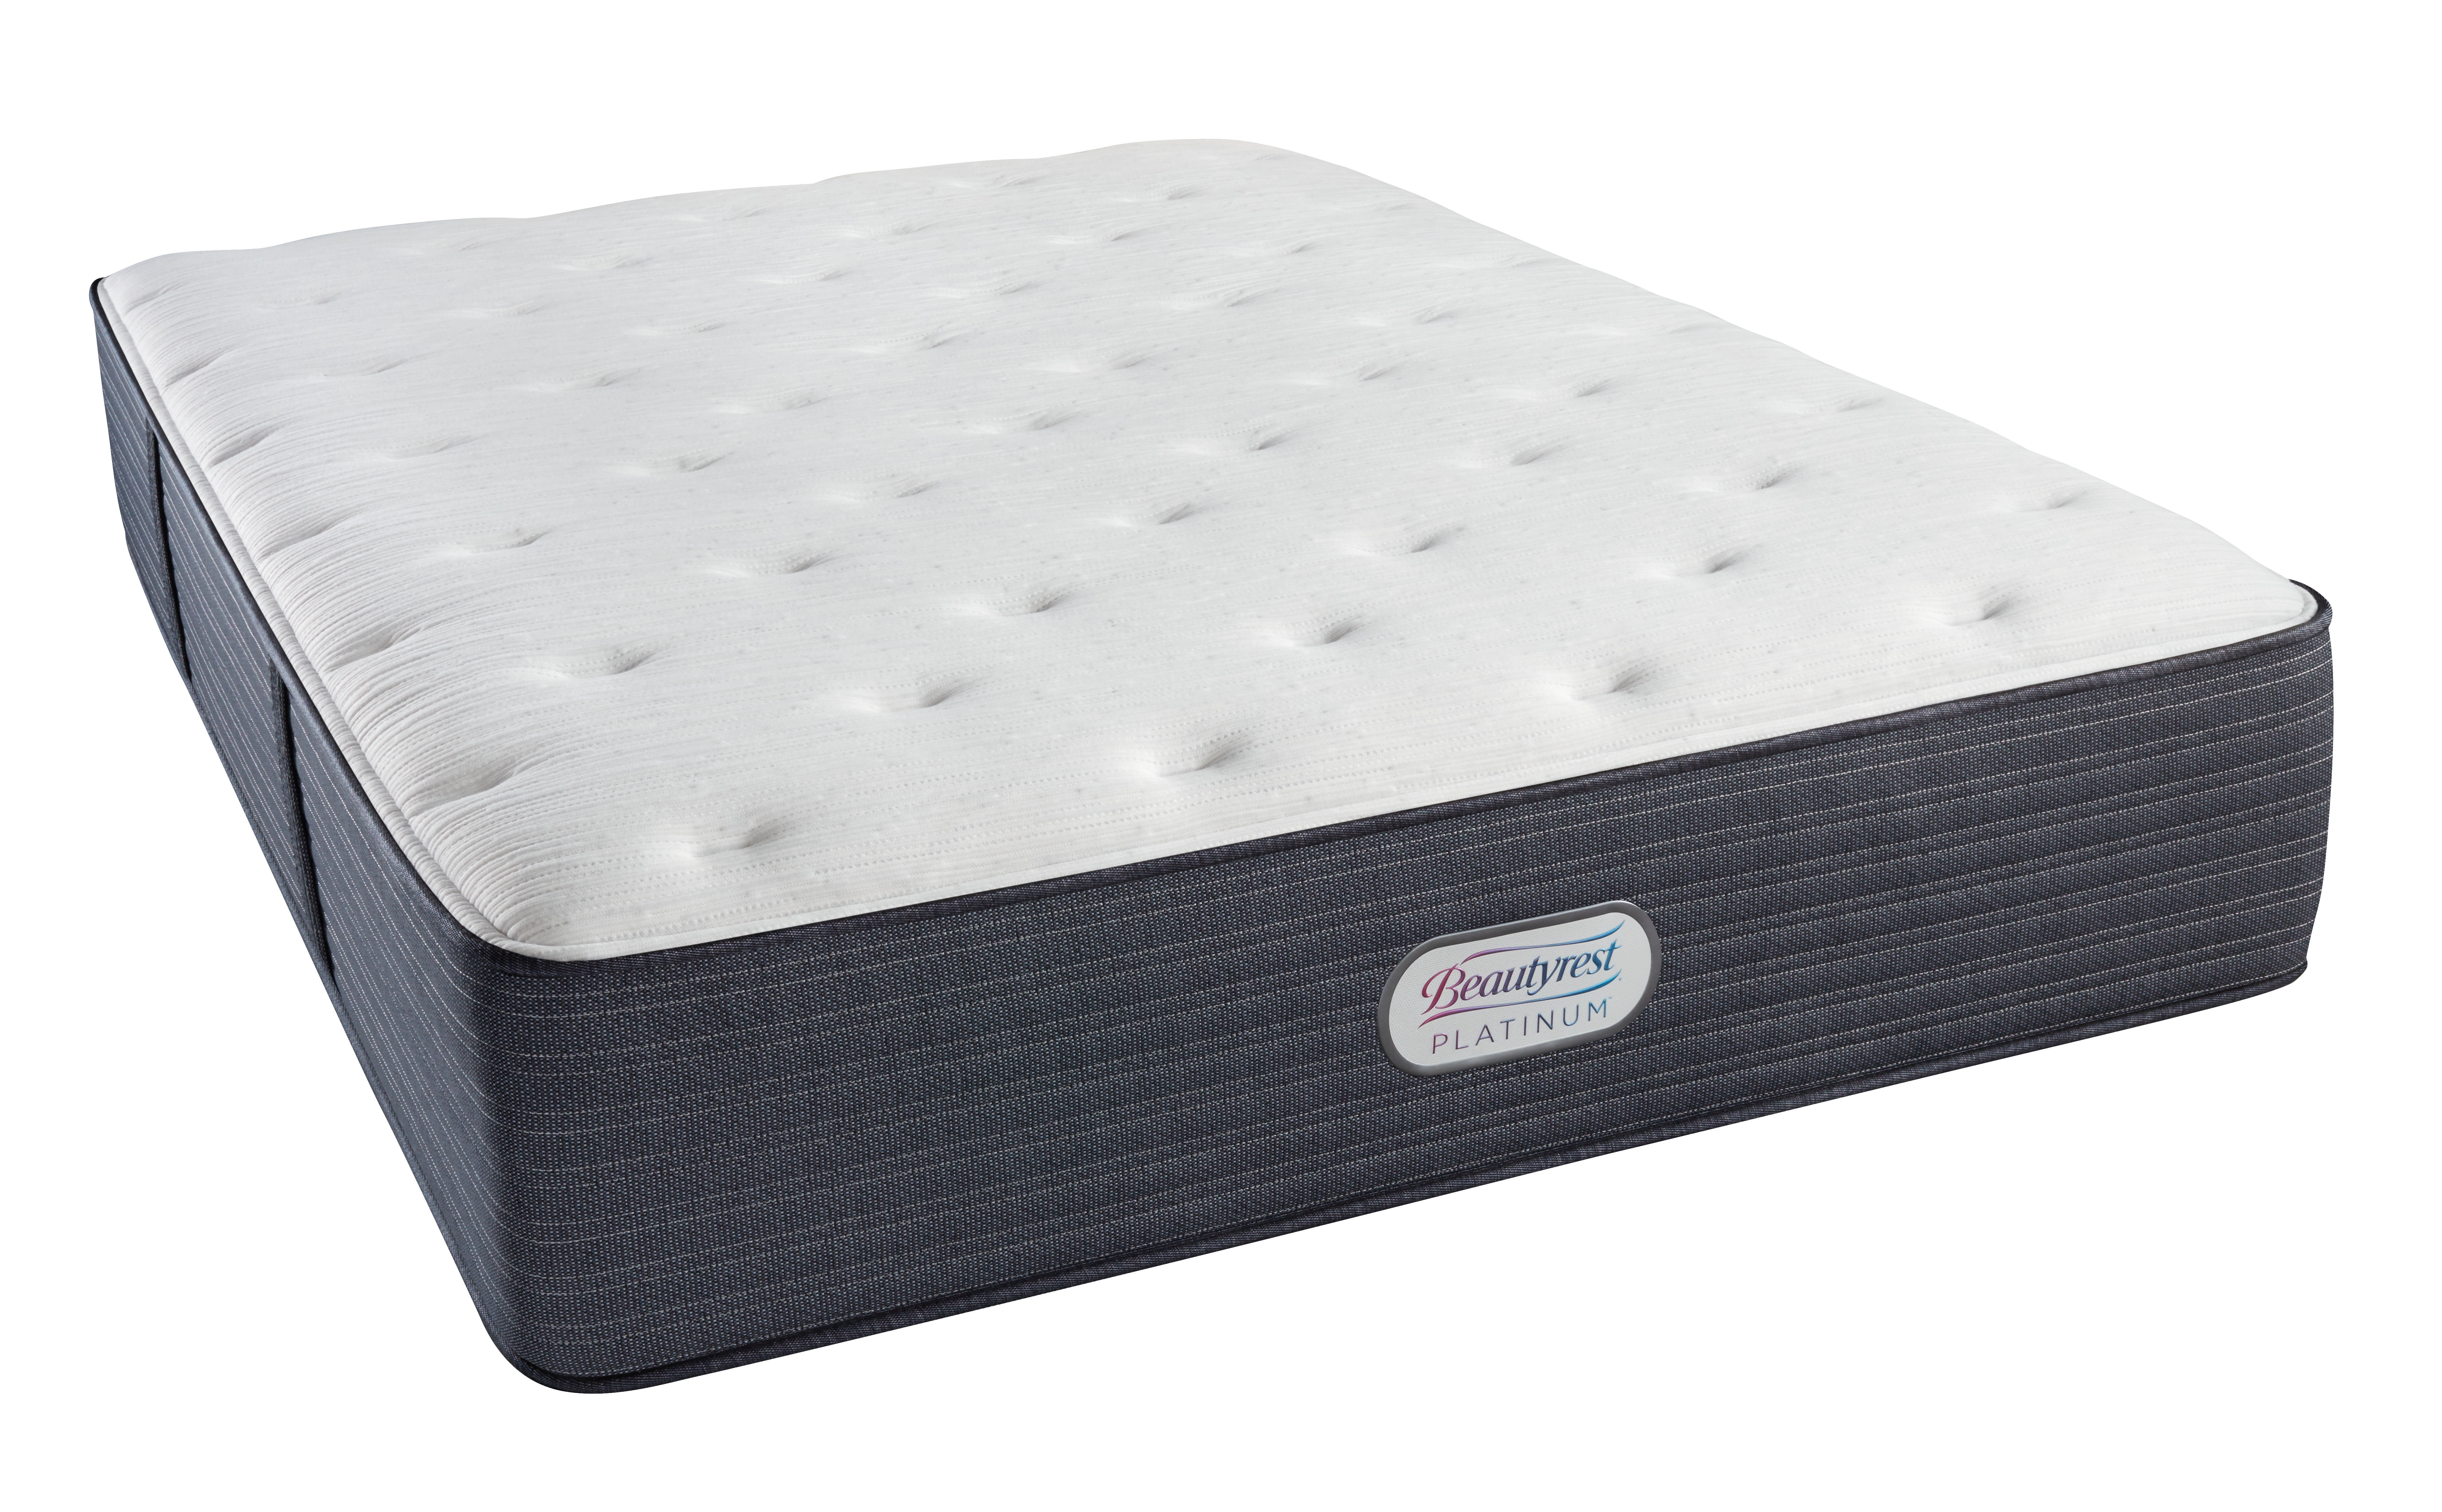 photo of beautyrest platinum firm mattress